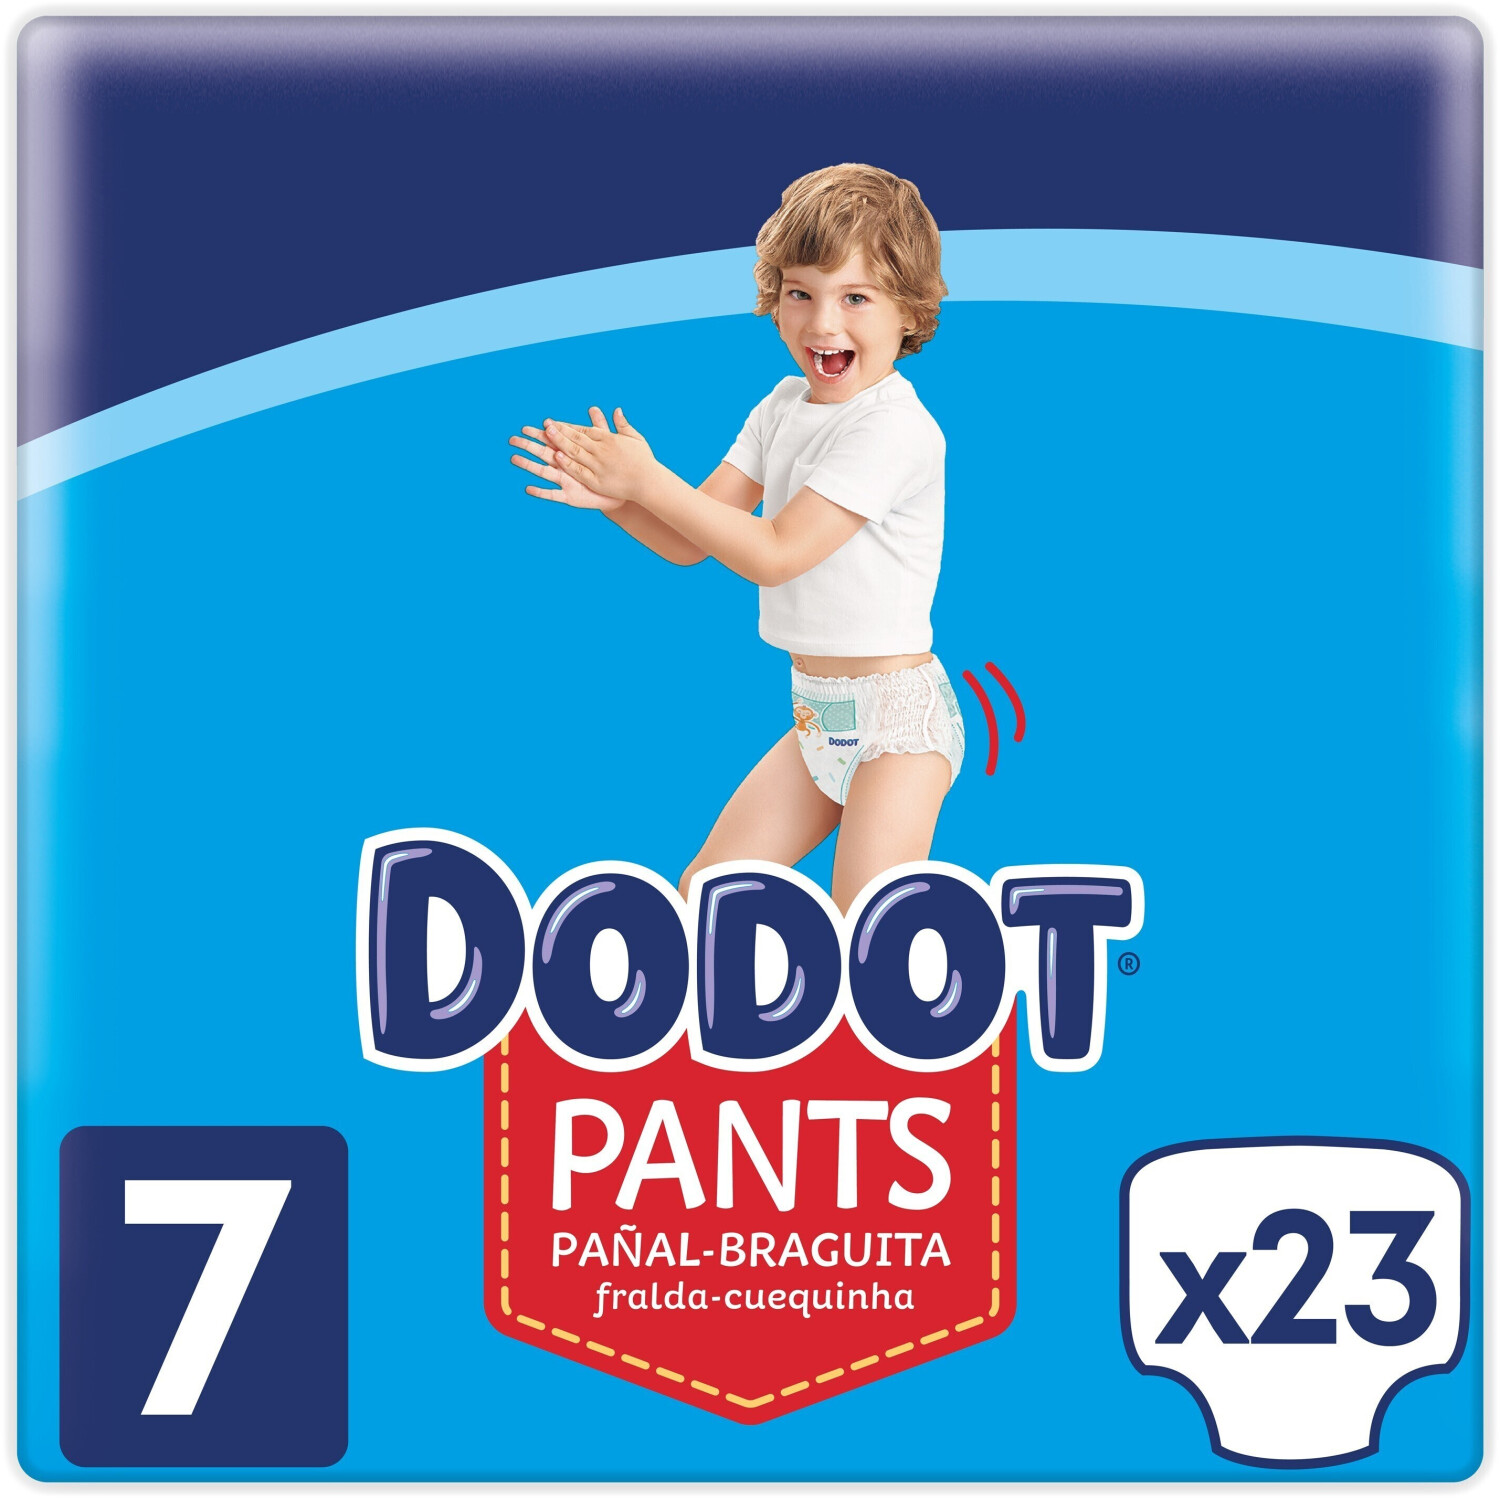 Dodot Pants pañal infantil Talla 7 +17 kg 23 unidades